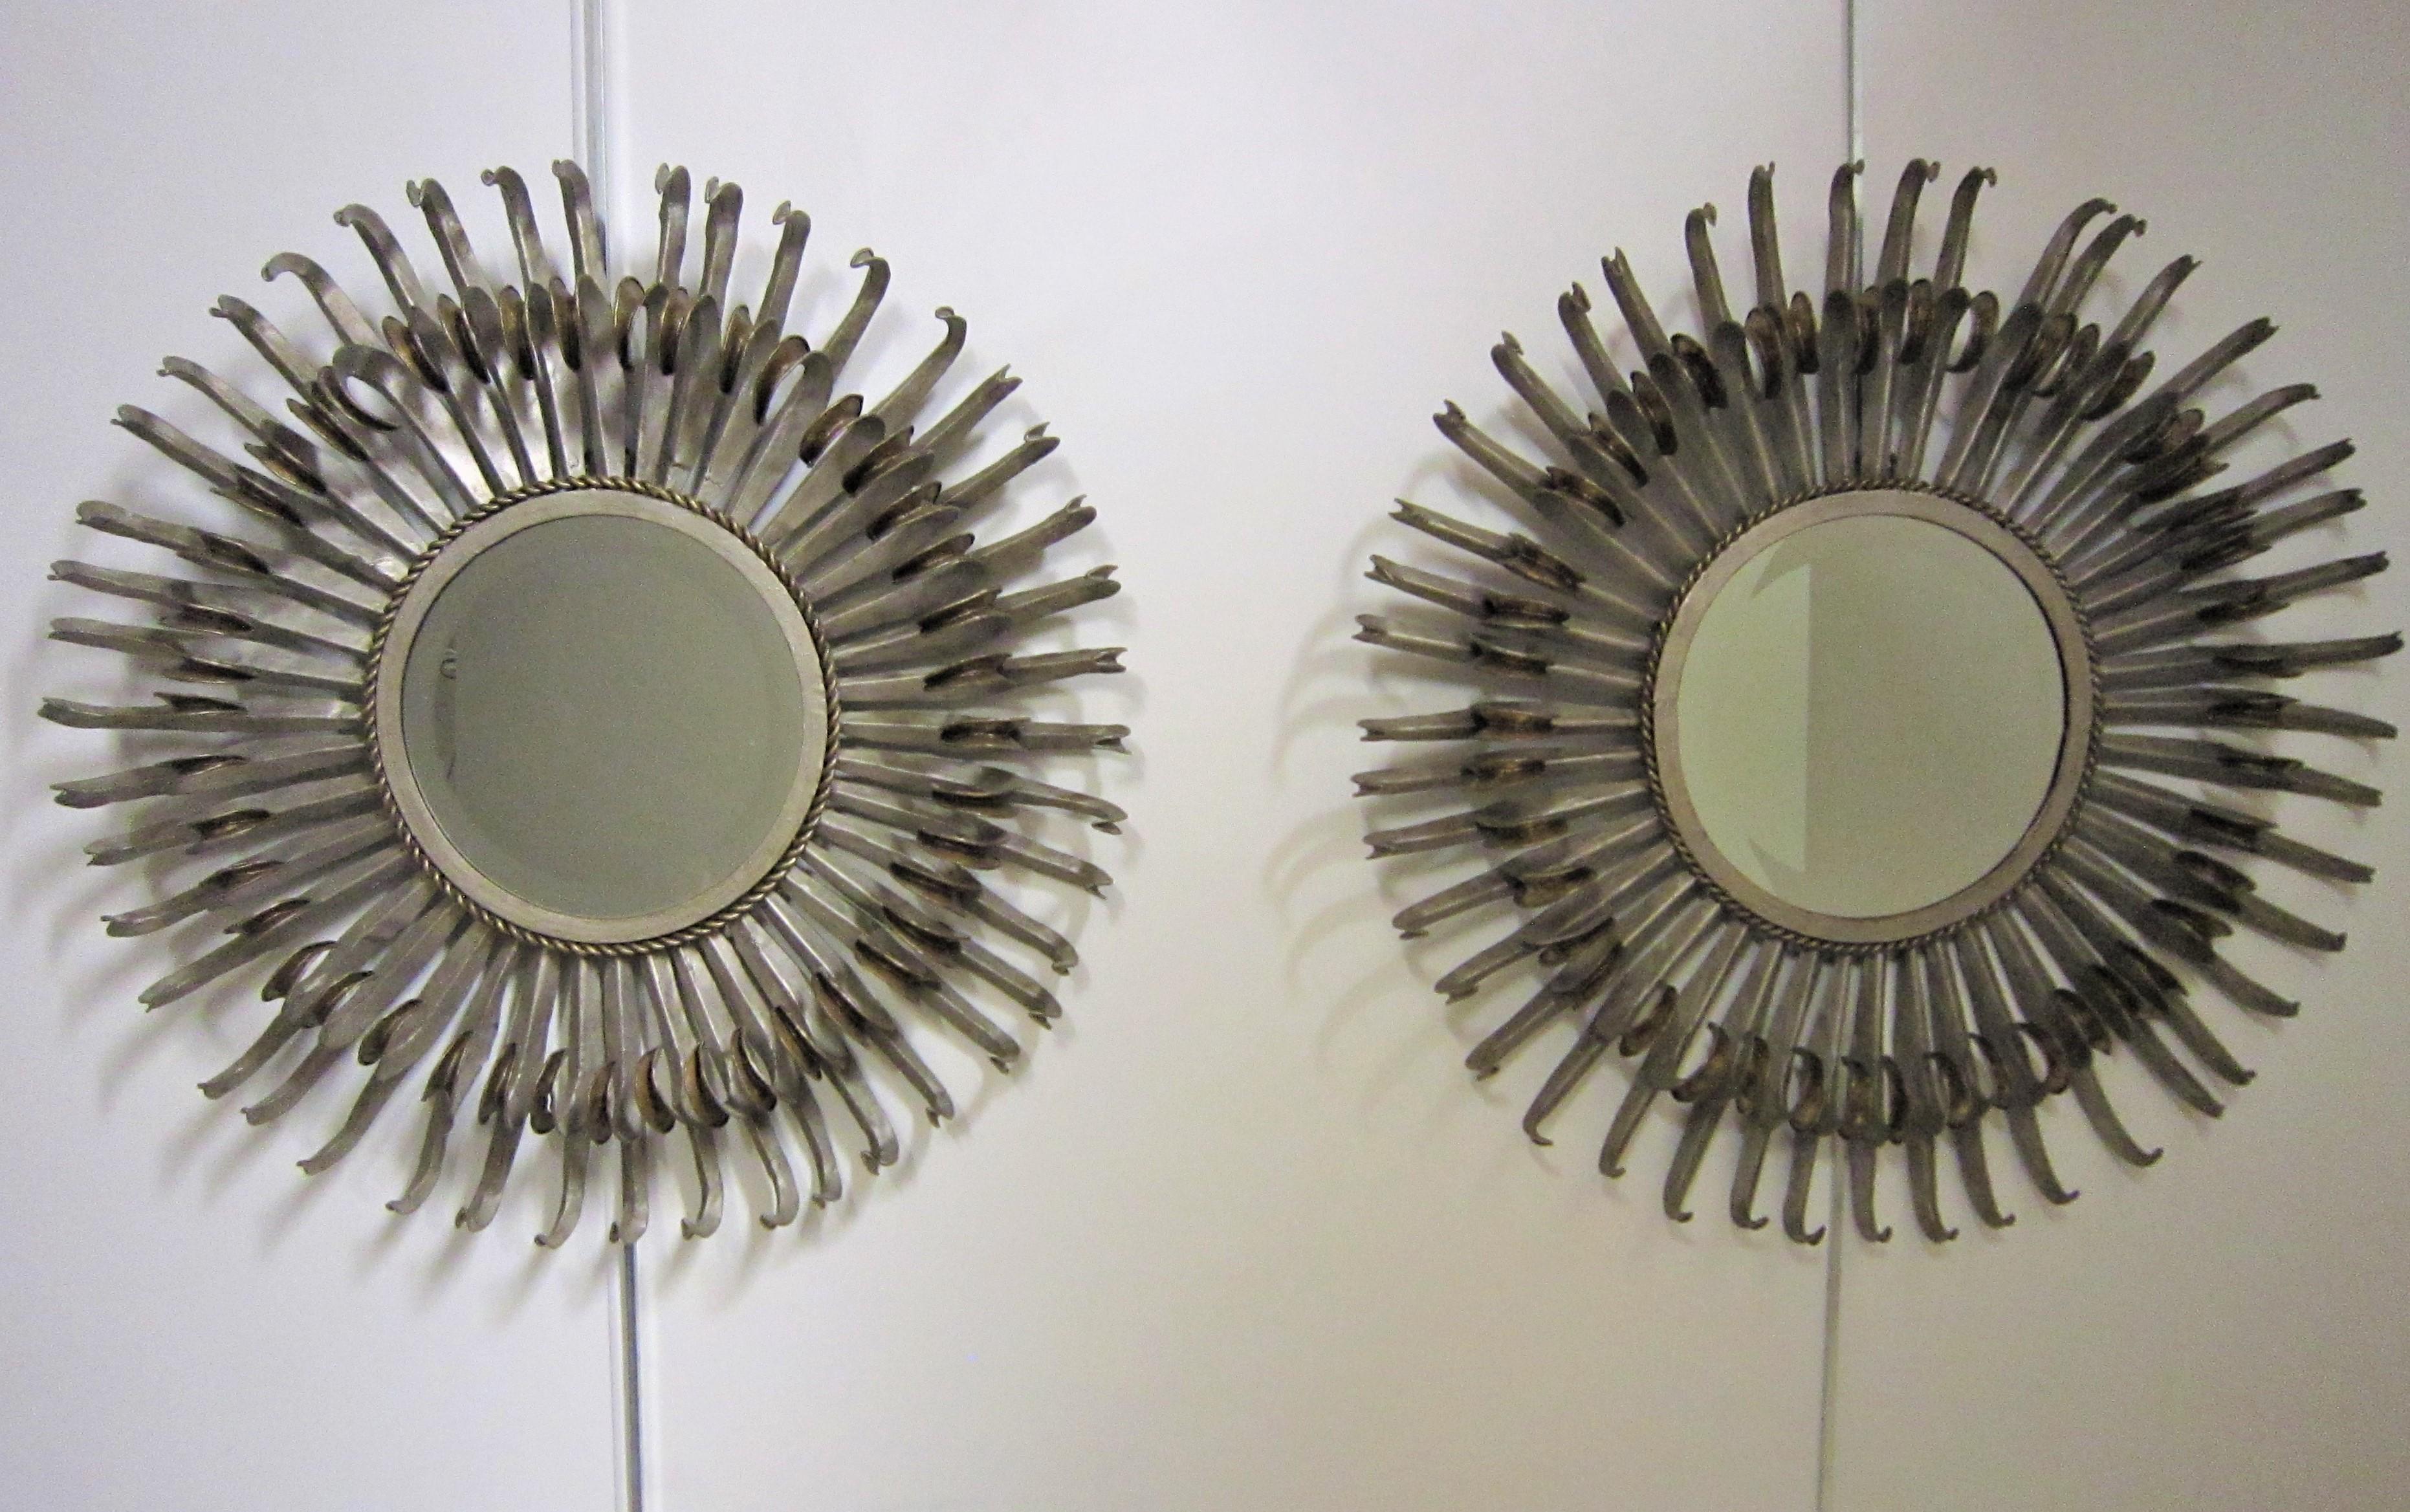 Paire originale de miroirs à rayons bicolores français à deux niveaux.
Des bords en cils recourbés en feuille d'argent et en fer doré foncé patiné ornent ce miroir soleil.
Le miroir central biseauté d'origine est entouré d'un détail tressé